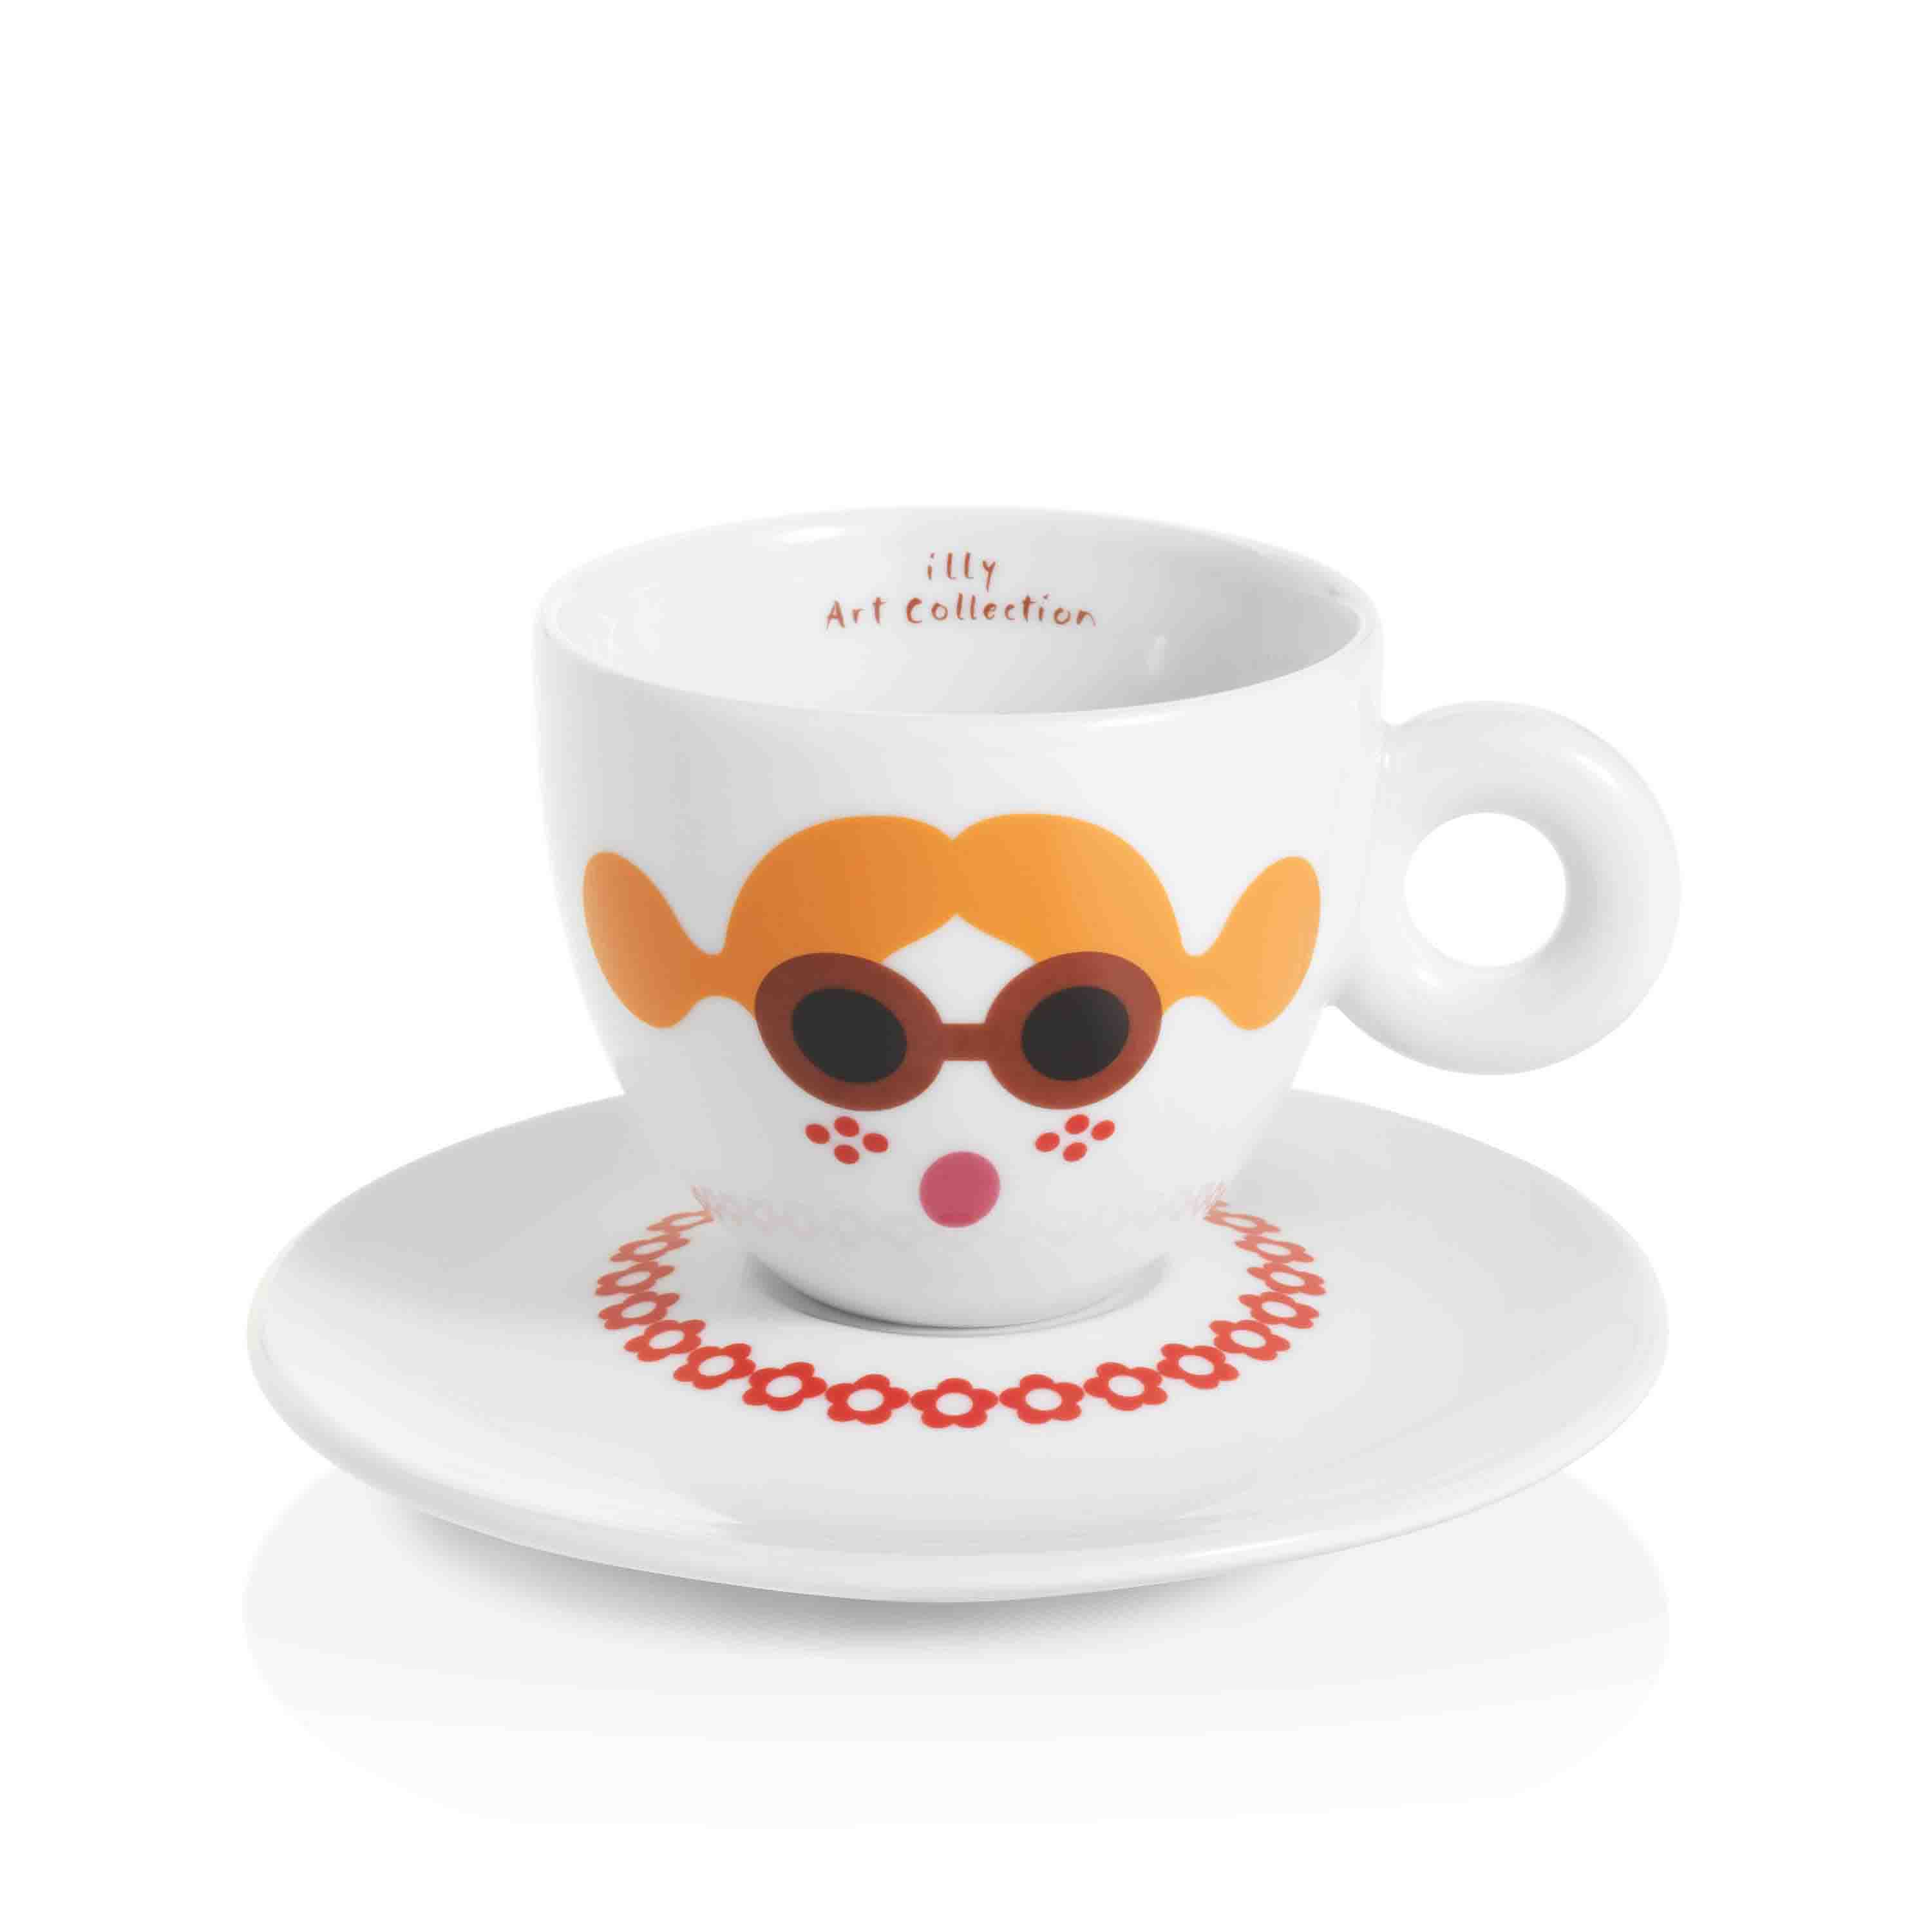 Set 6 tasses à cappuccino par Zagnoli - illy Art Collection